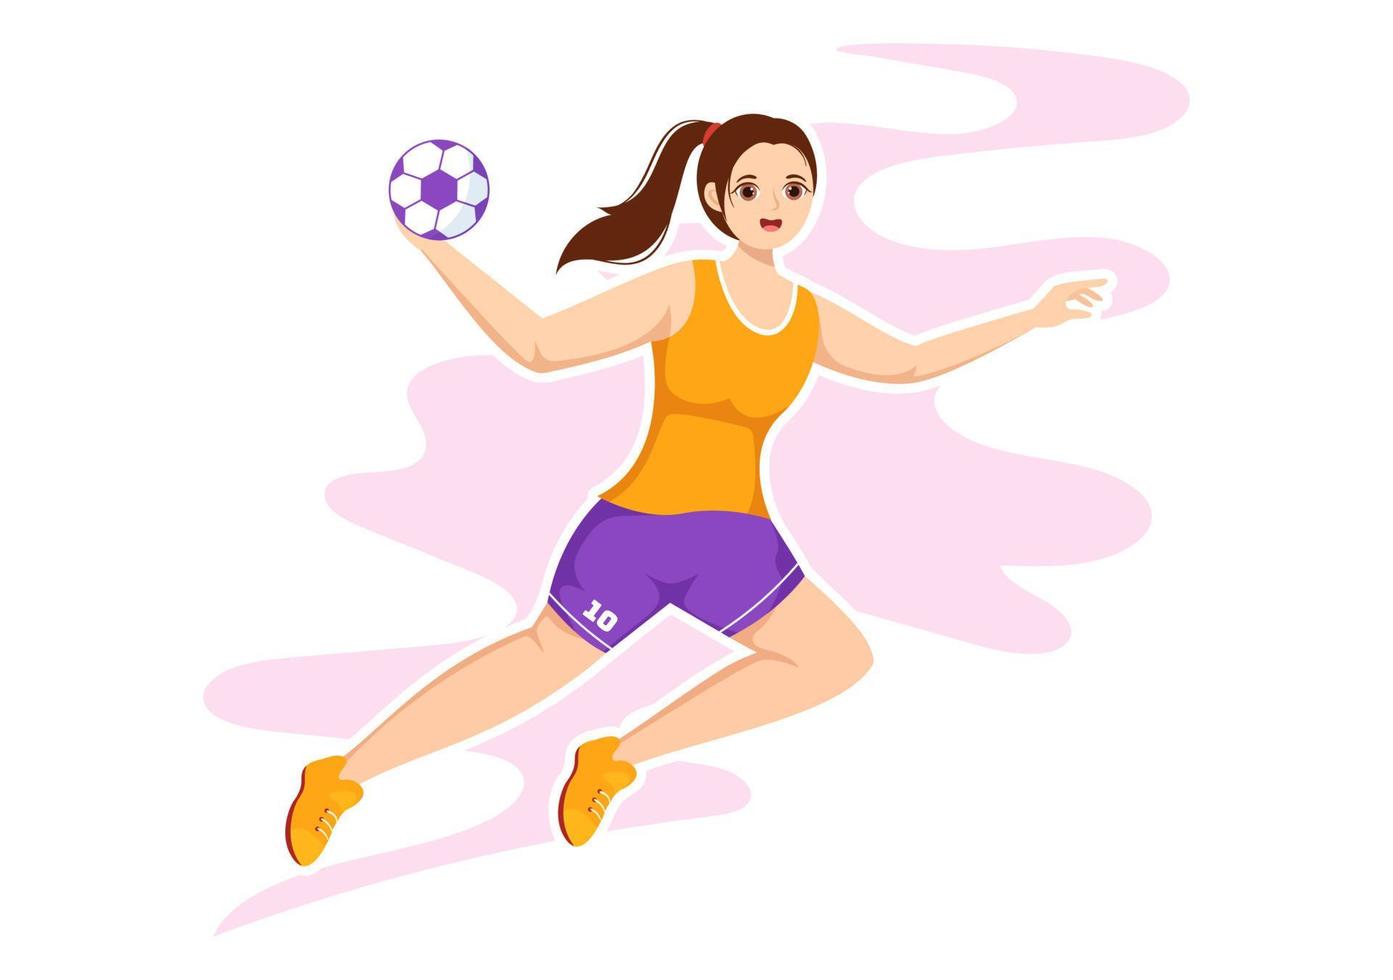 handboll illustration av en spelare rörande de boll med hans hand och scoring en mål i en sporter konkurrens platt tecknad serie hand teckning mall vektor